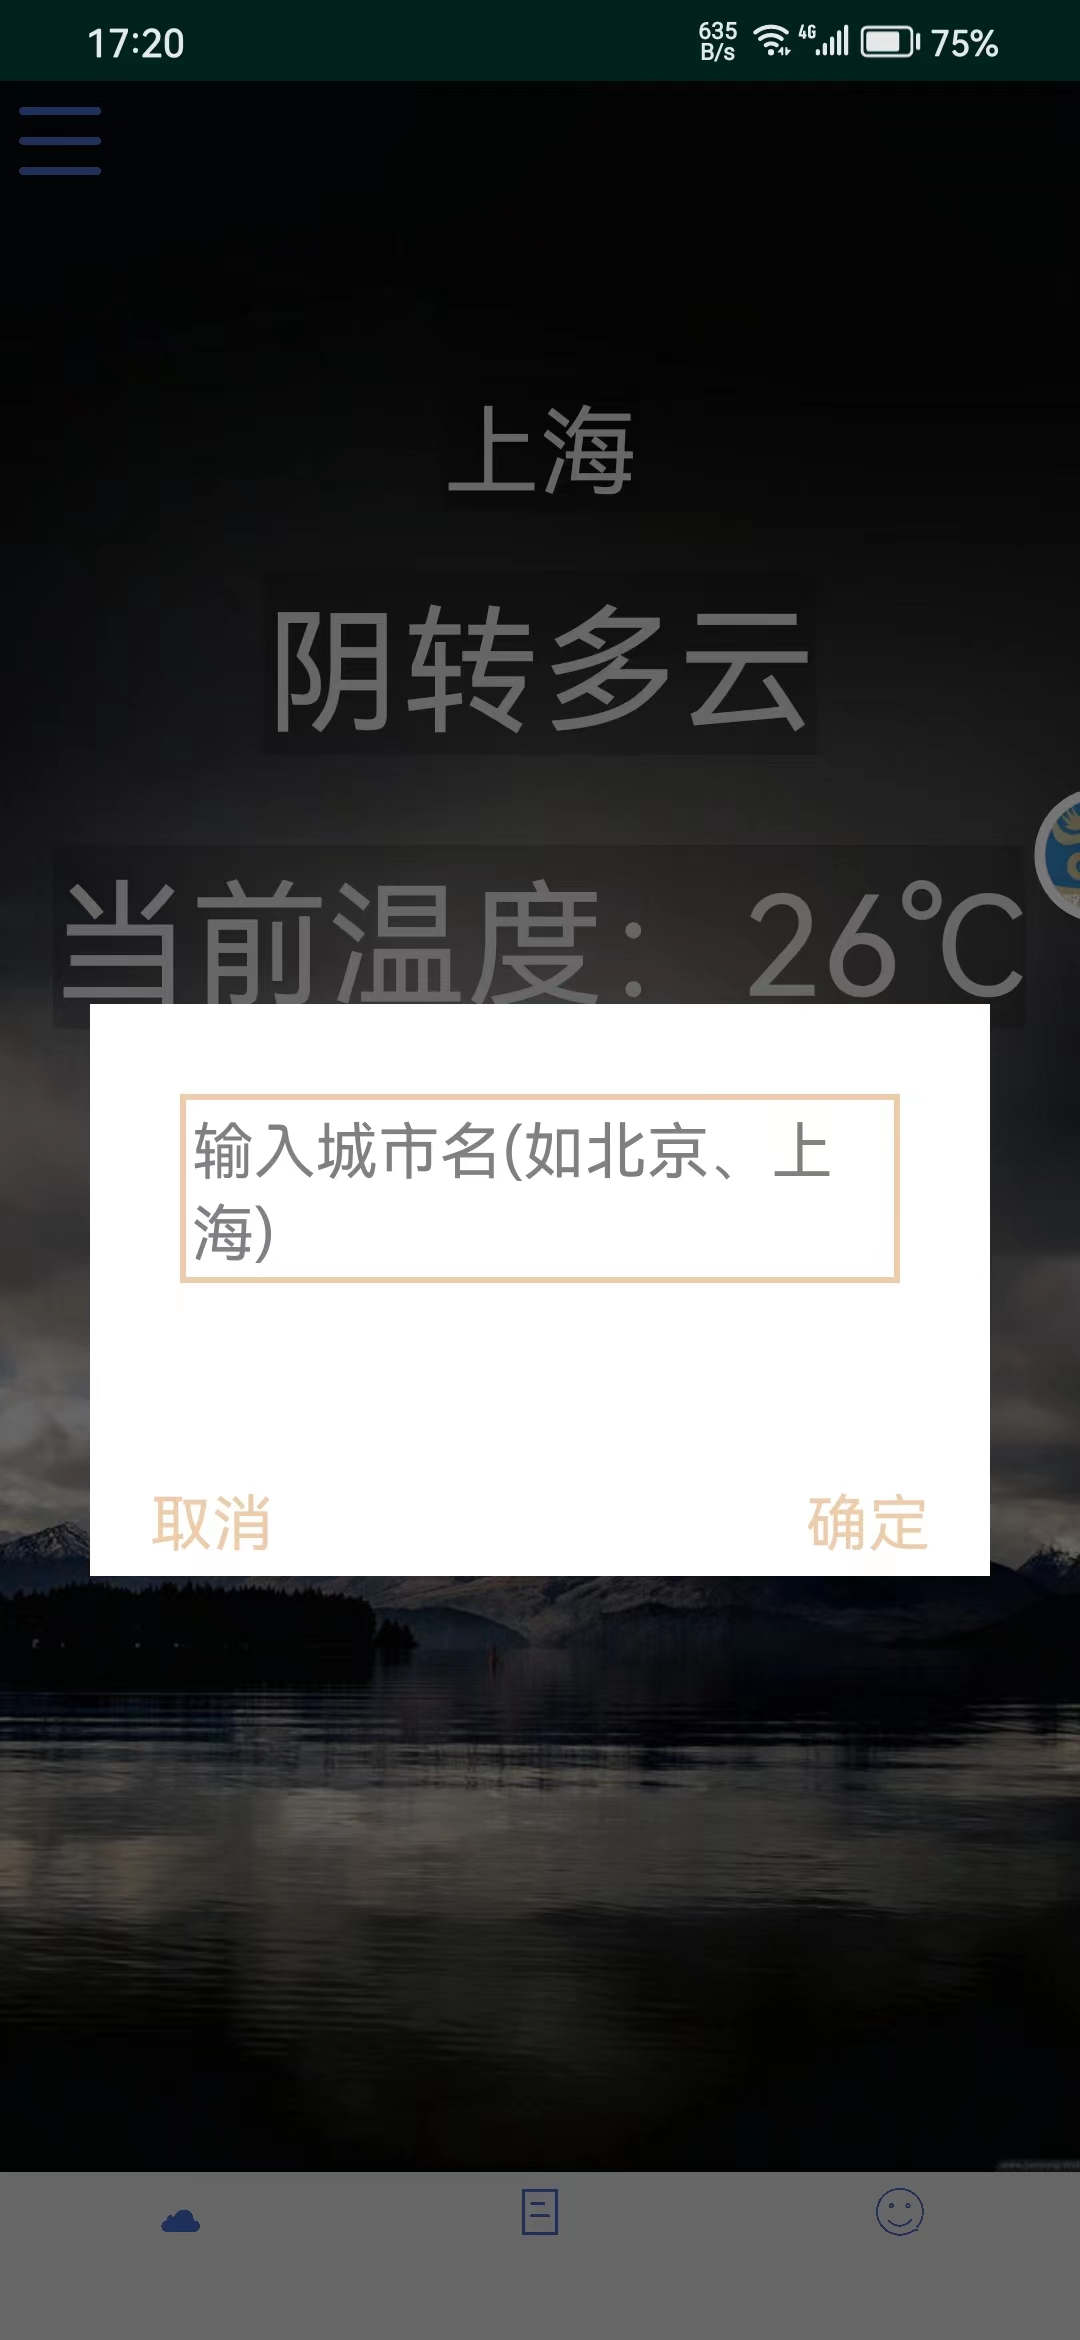 茔禾契天气预报app官方版截图1: